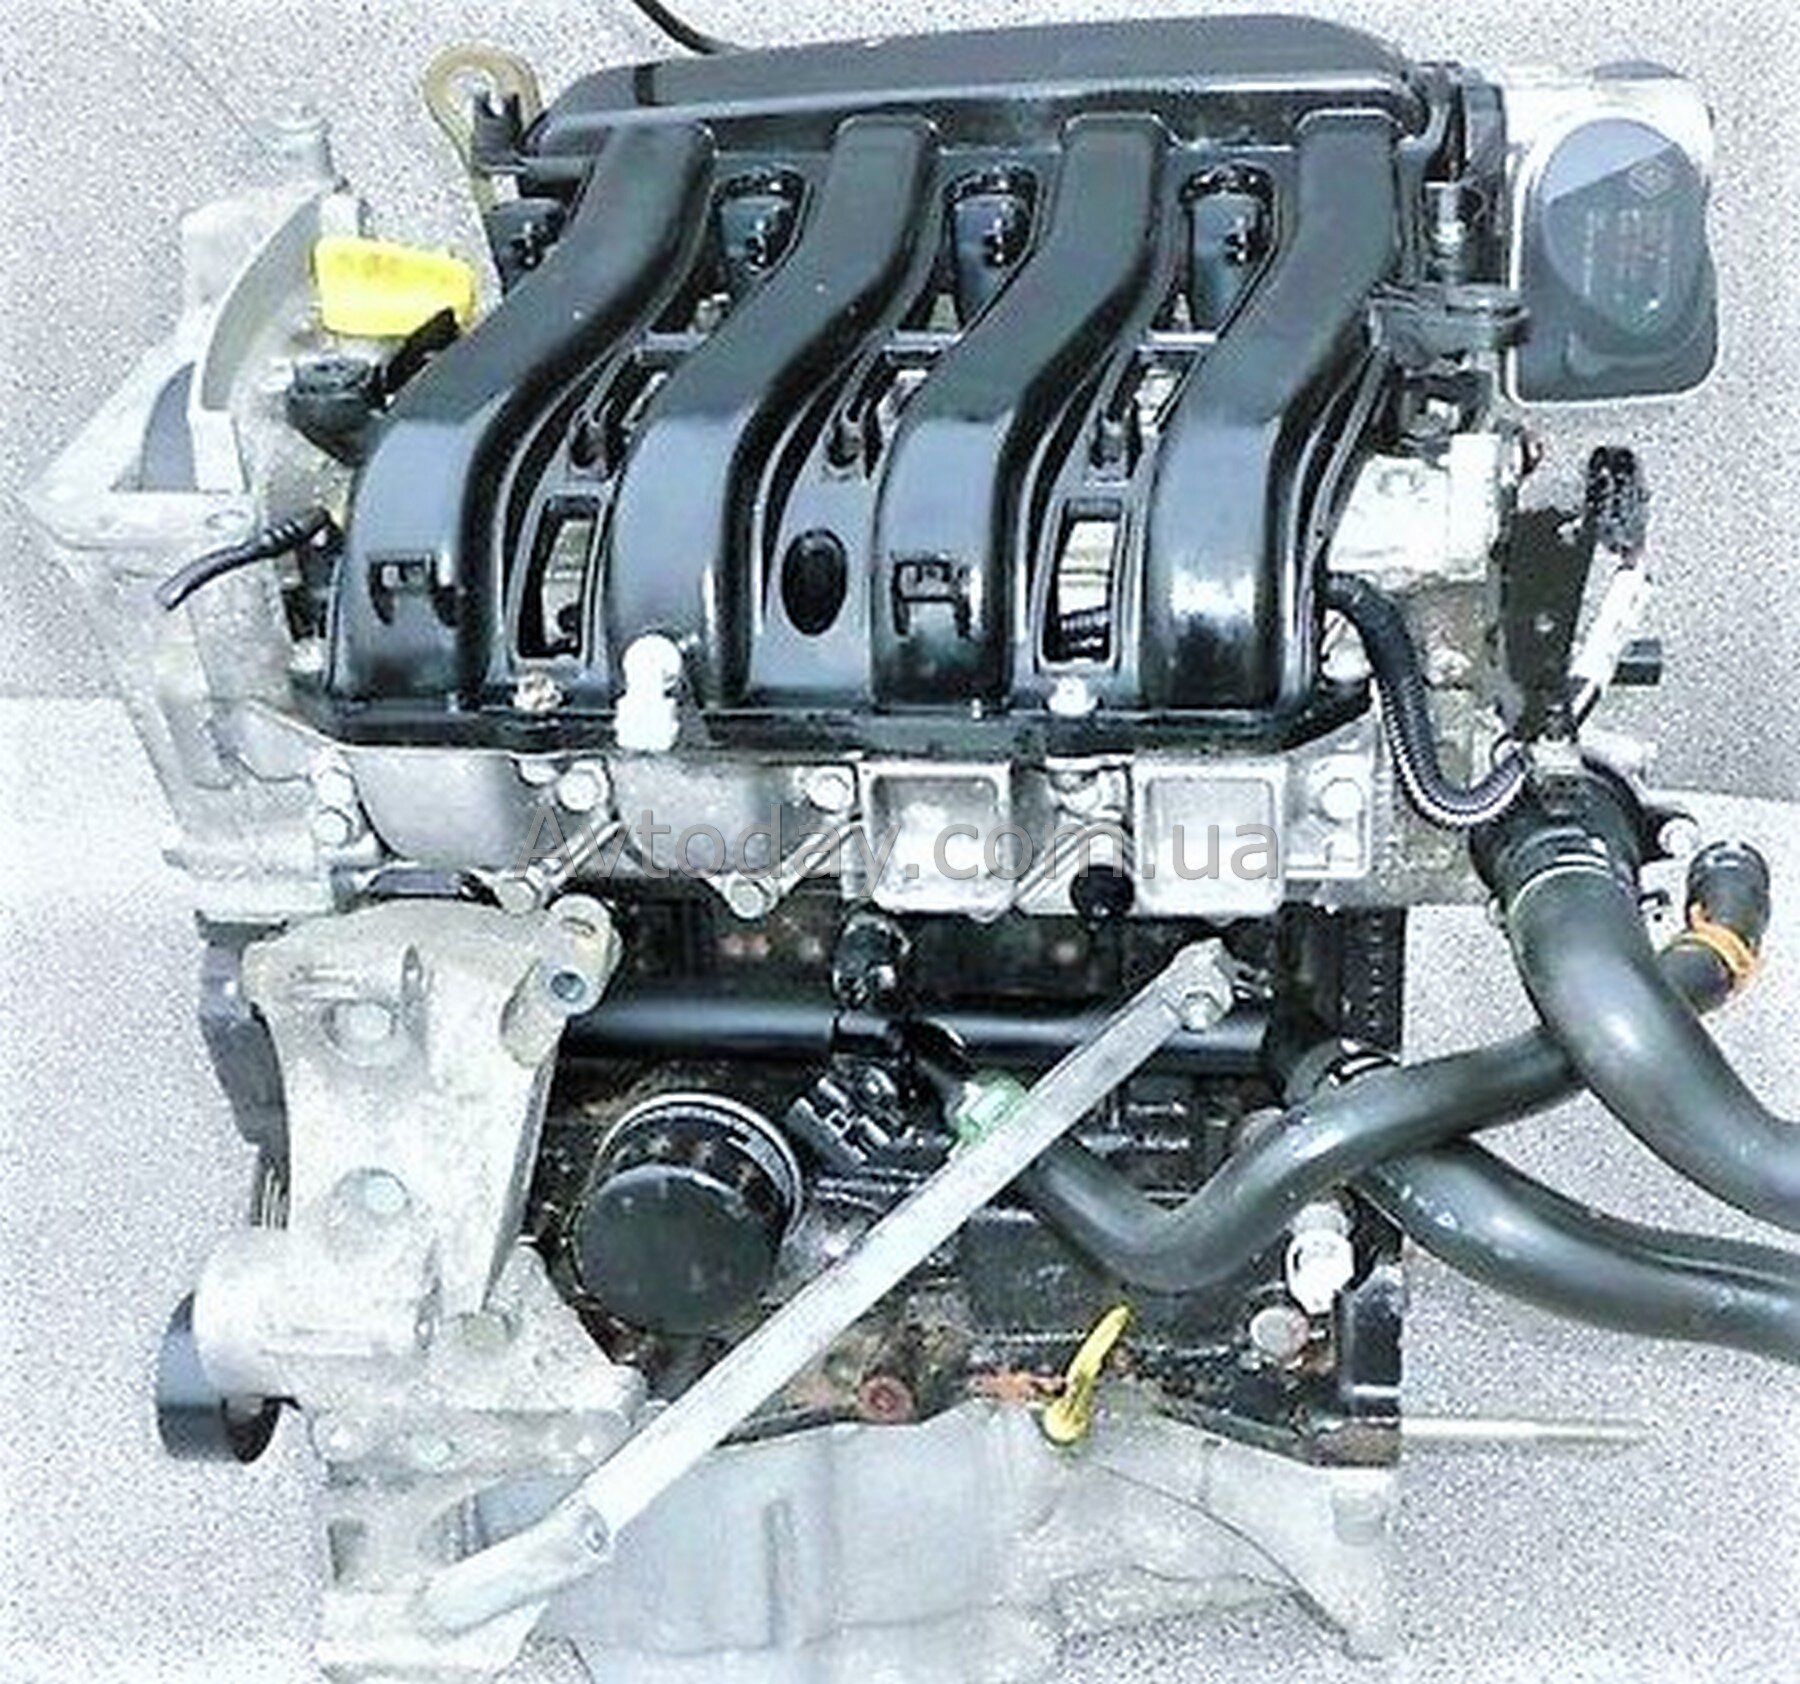 Ремонт двигателя 1.6 рено. Renault k4m 1.6 л 16 клапанов. Двигатель Рено Меган 1.6 16 клапанов. Двигатель Рено 1 6 16кл. Двигатель Renault 1.6 (k4m.